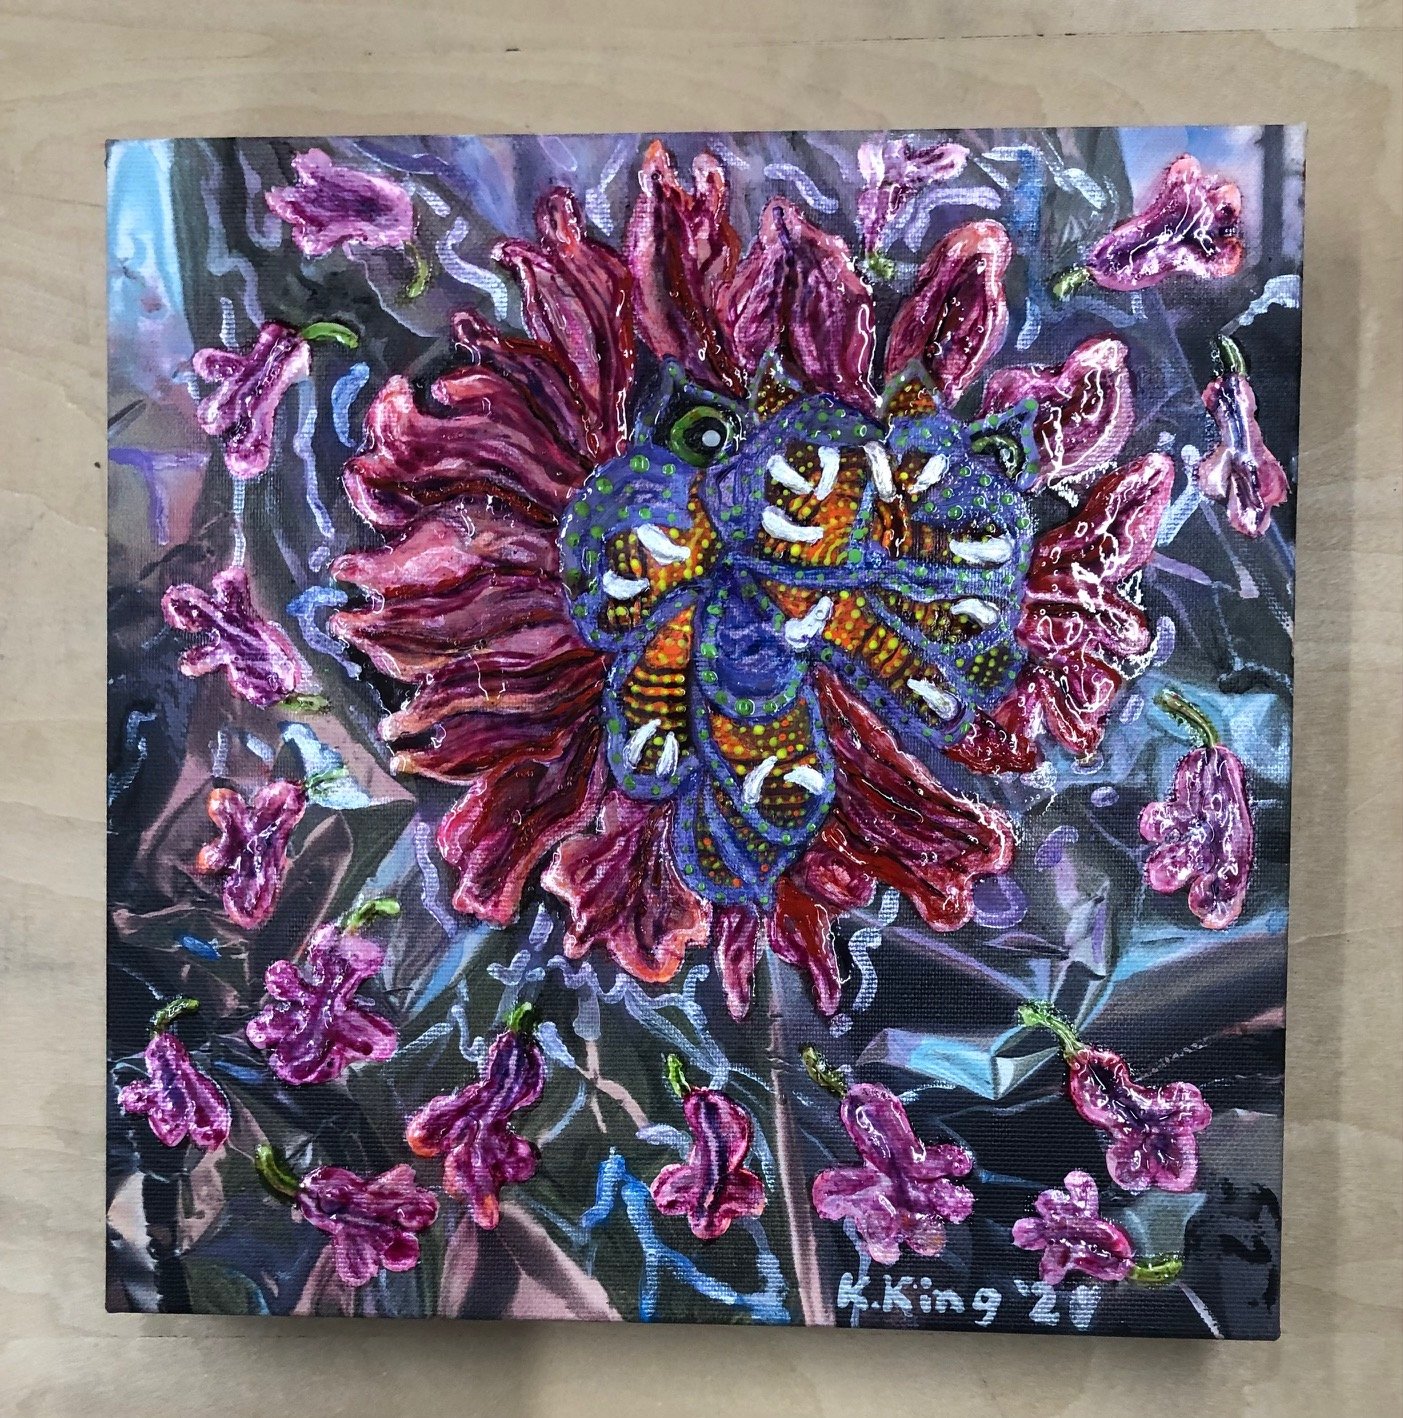   &nbsp;“Explosive Insane Flower Dragon”  8”x8”x1.25”; Oil over Acrylic on Digital Print on Canvas  $400. 